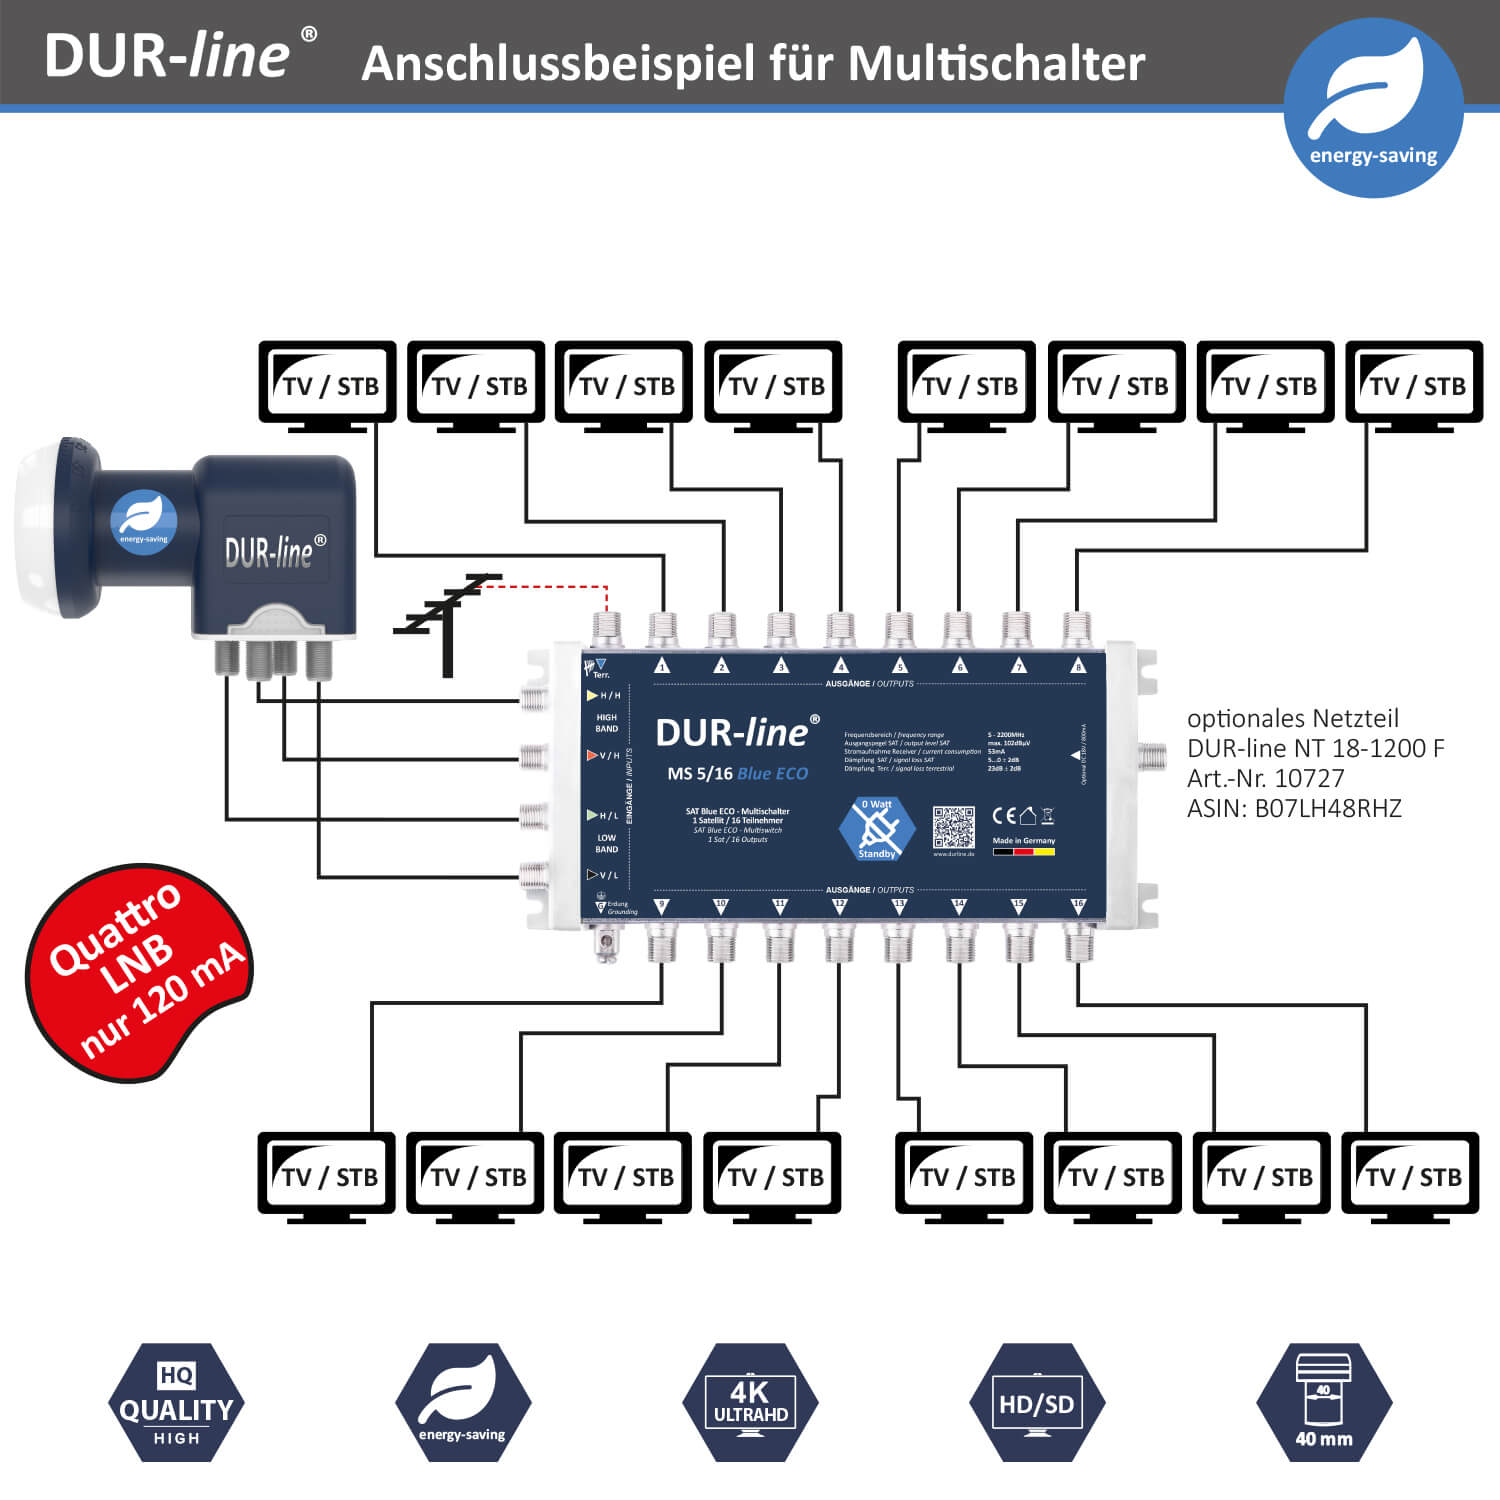 Dur-Line-MS-5-16-eco blue-Multischalter Anschlussbeispiel